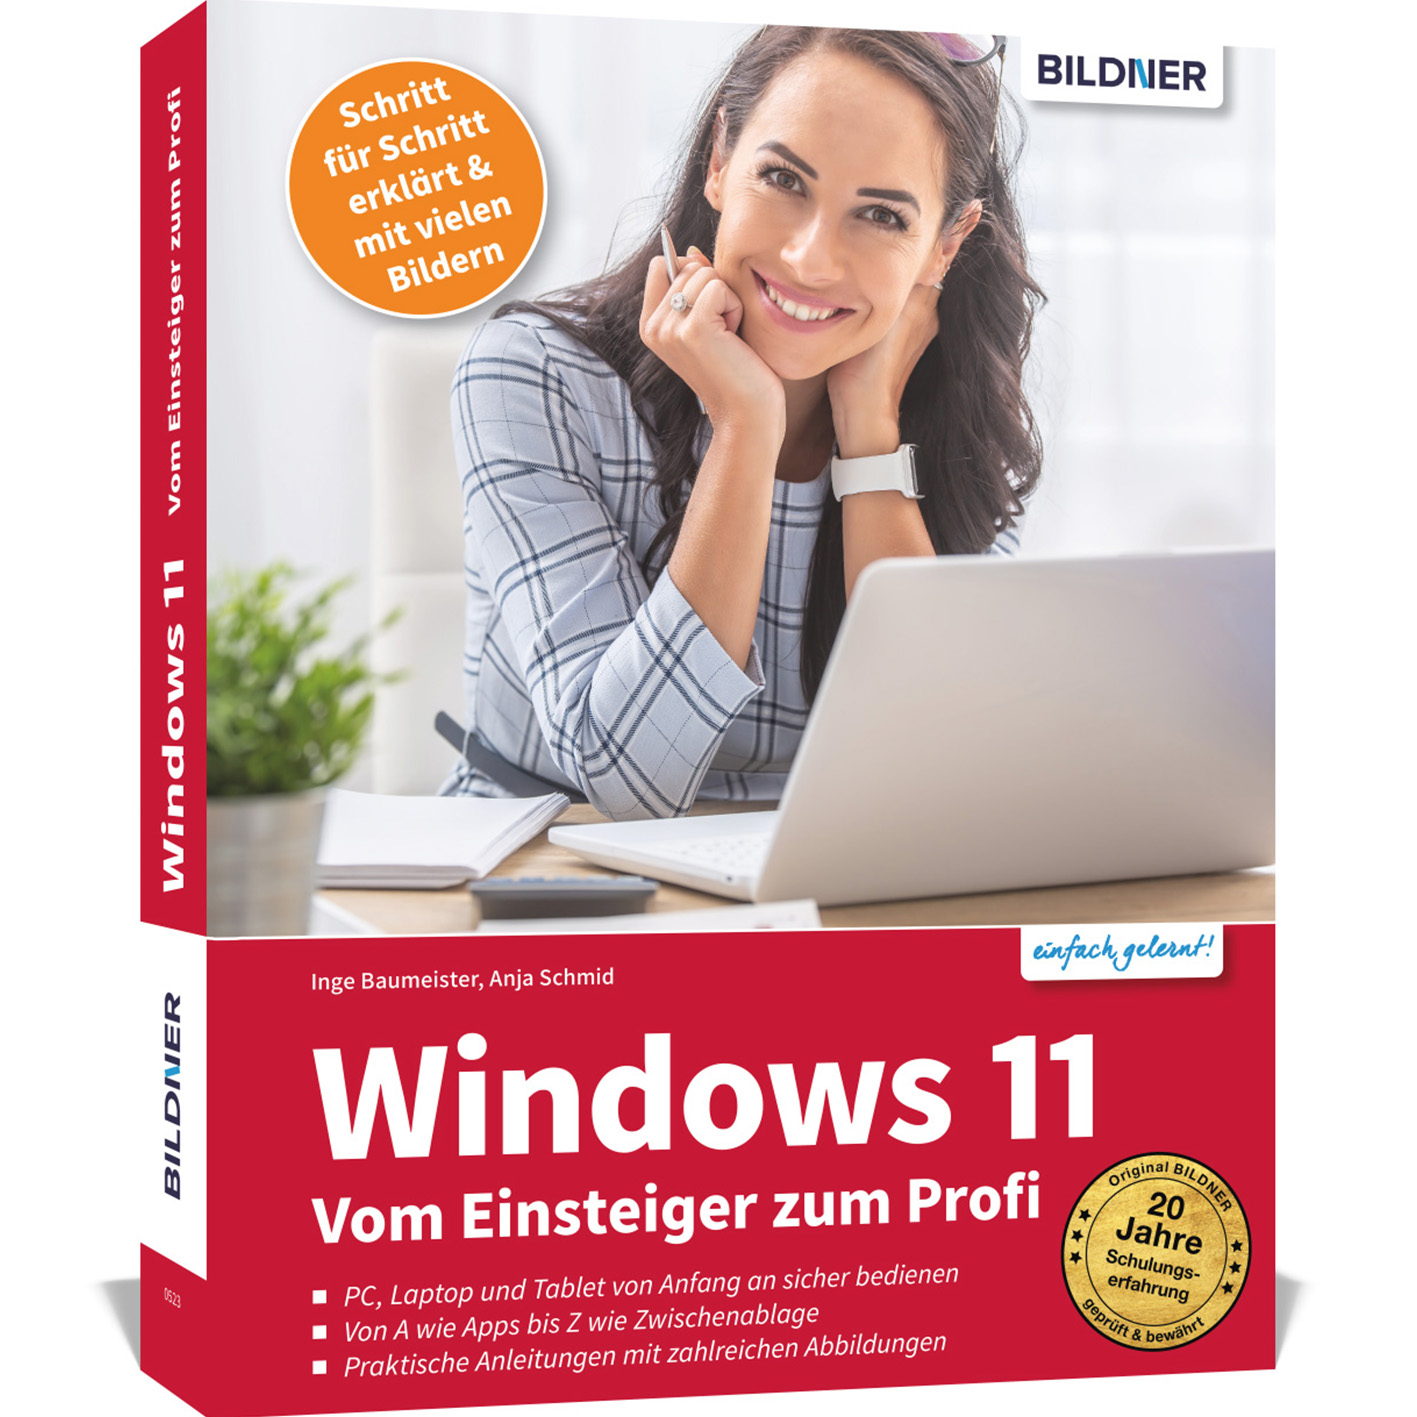 Windows 11 - Vom Profi zum Einsteiger